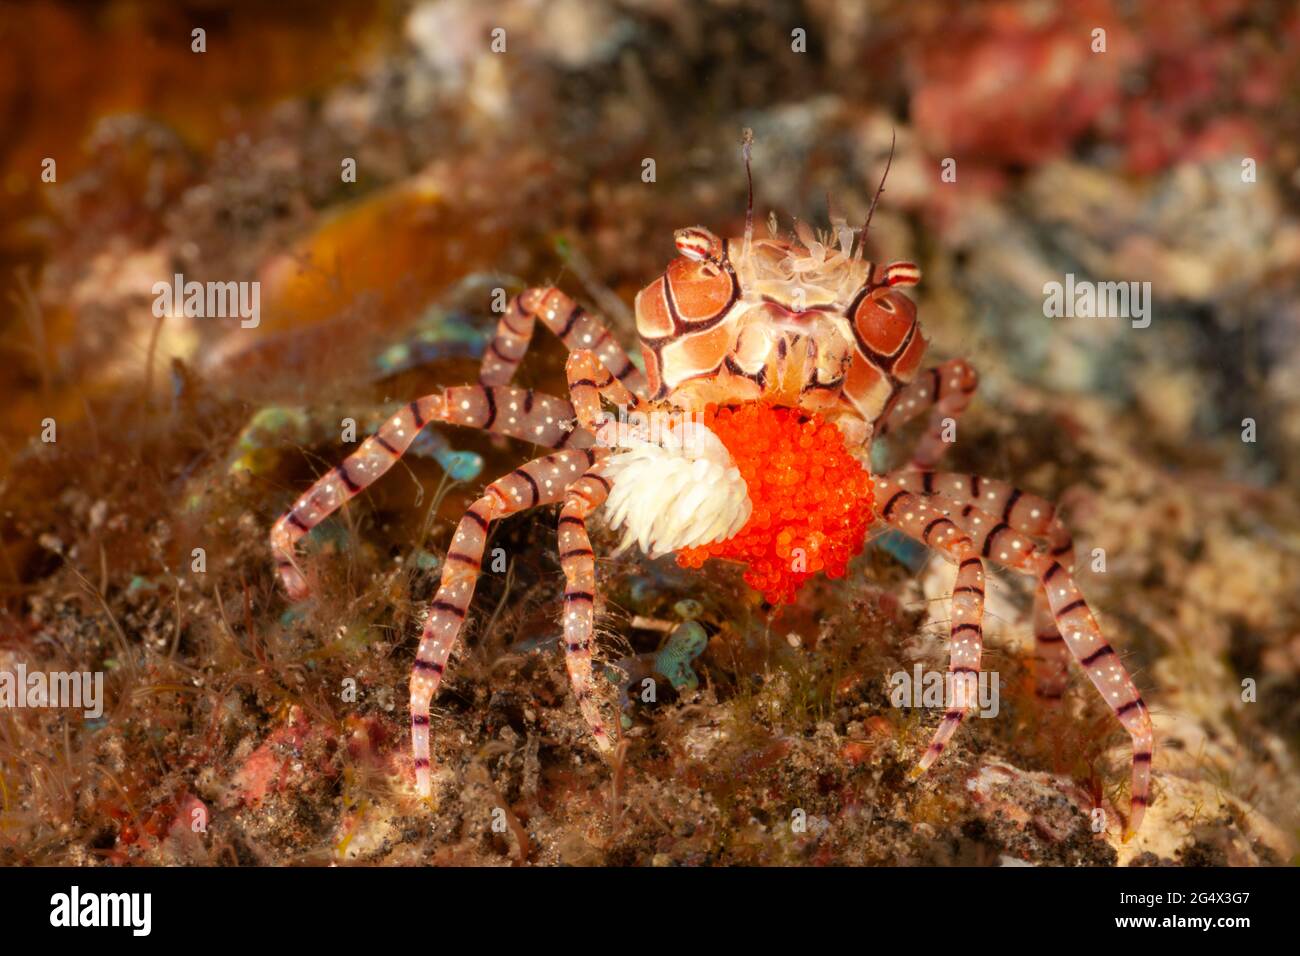 Ce crabe pompon ou crabe en mosaïque, Lybia tesselata, est porteur d'une grande masse d'oeufs avec ses anémones associées, Triactis producta, qu'il carr Banque D'Images